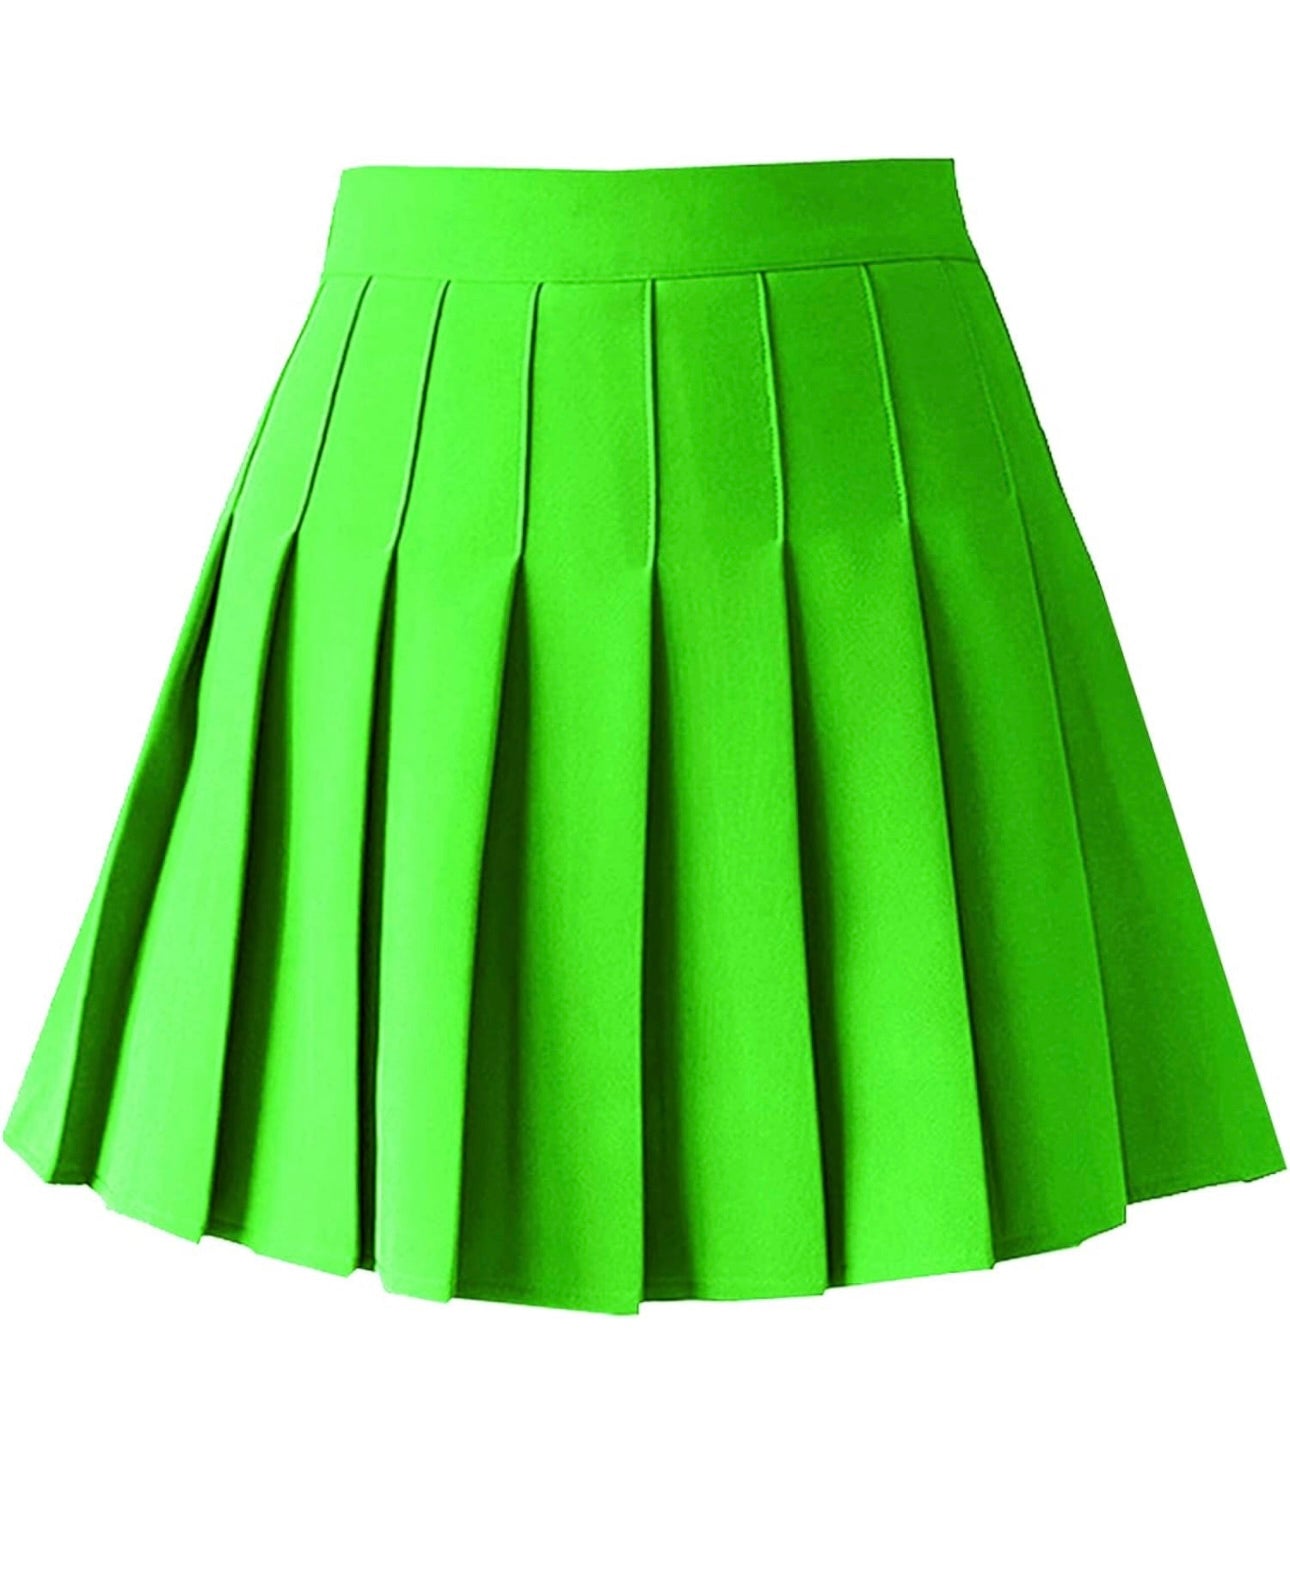 The Kingston Skirt